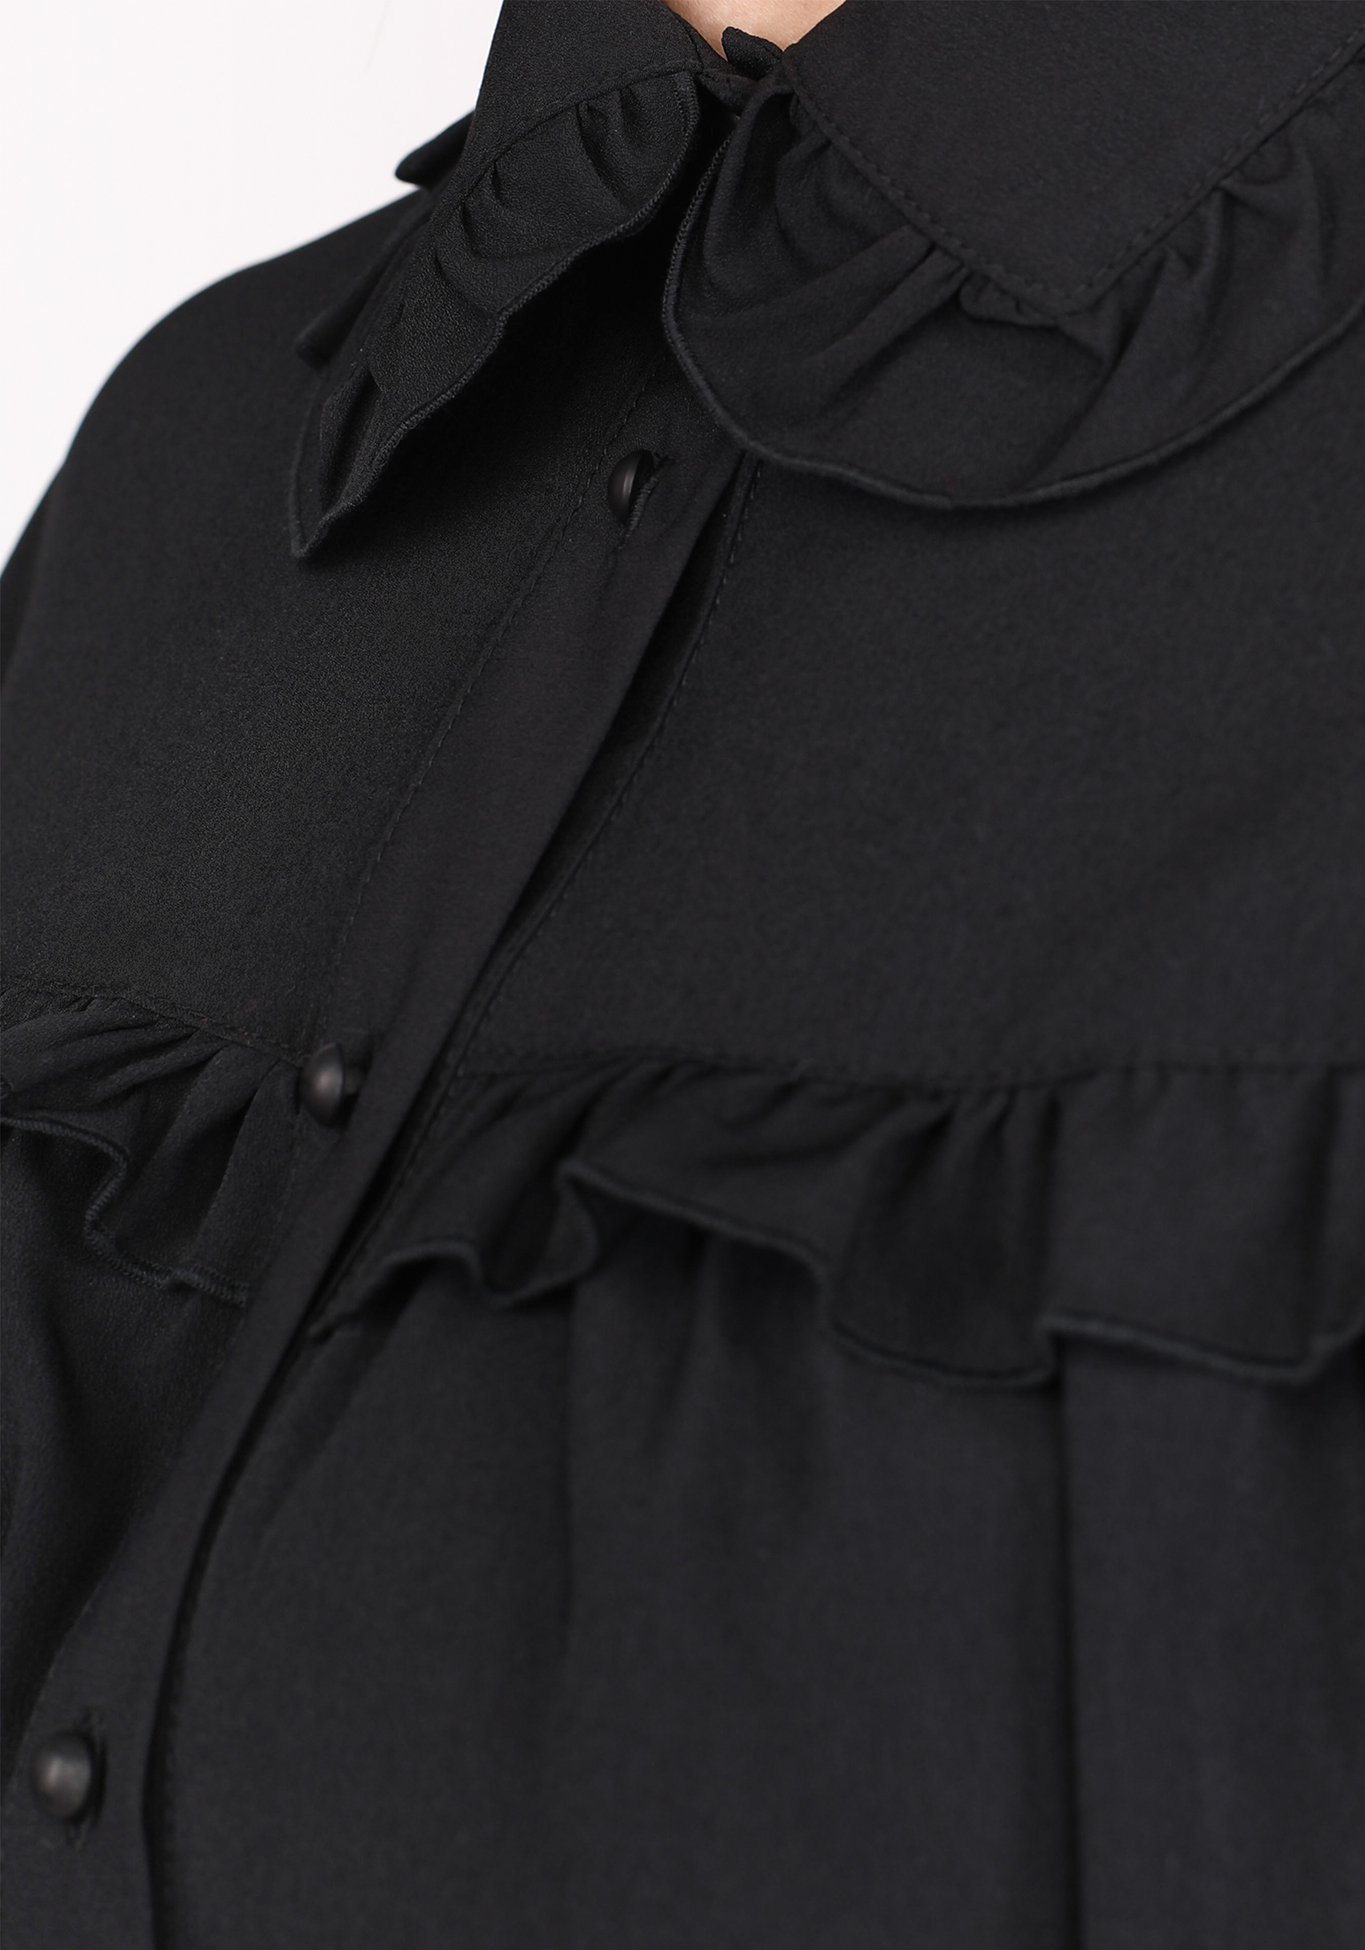 Блуза с объемными рукавами и рюшами Victoria, размер 50, цвет молочный - фото 6